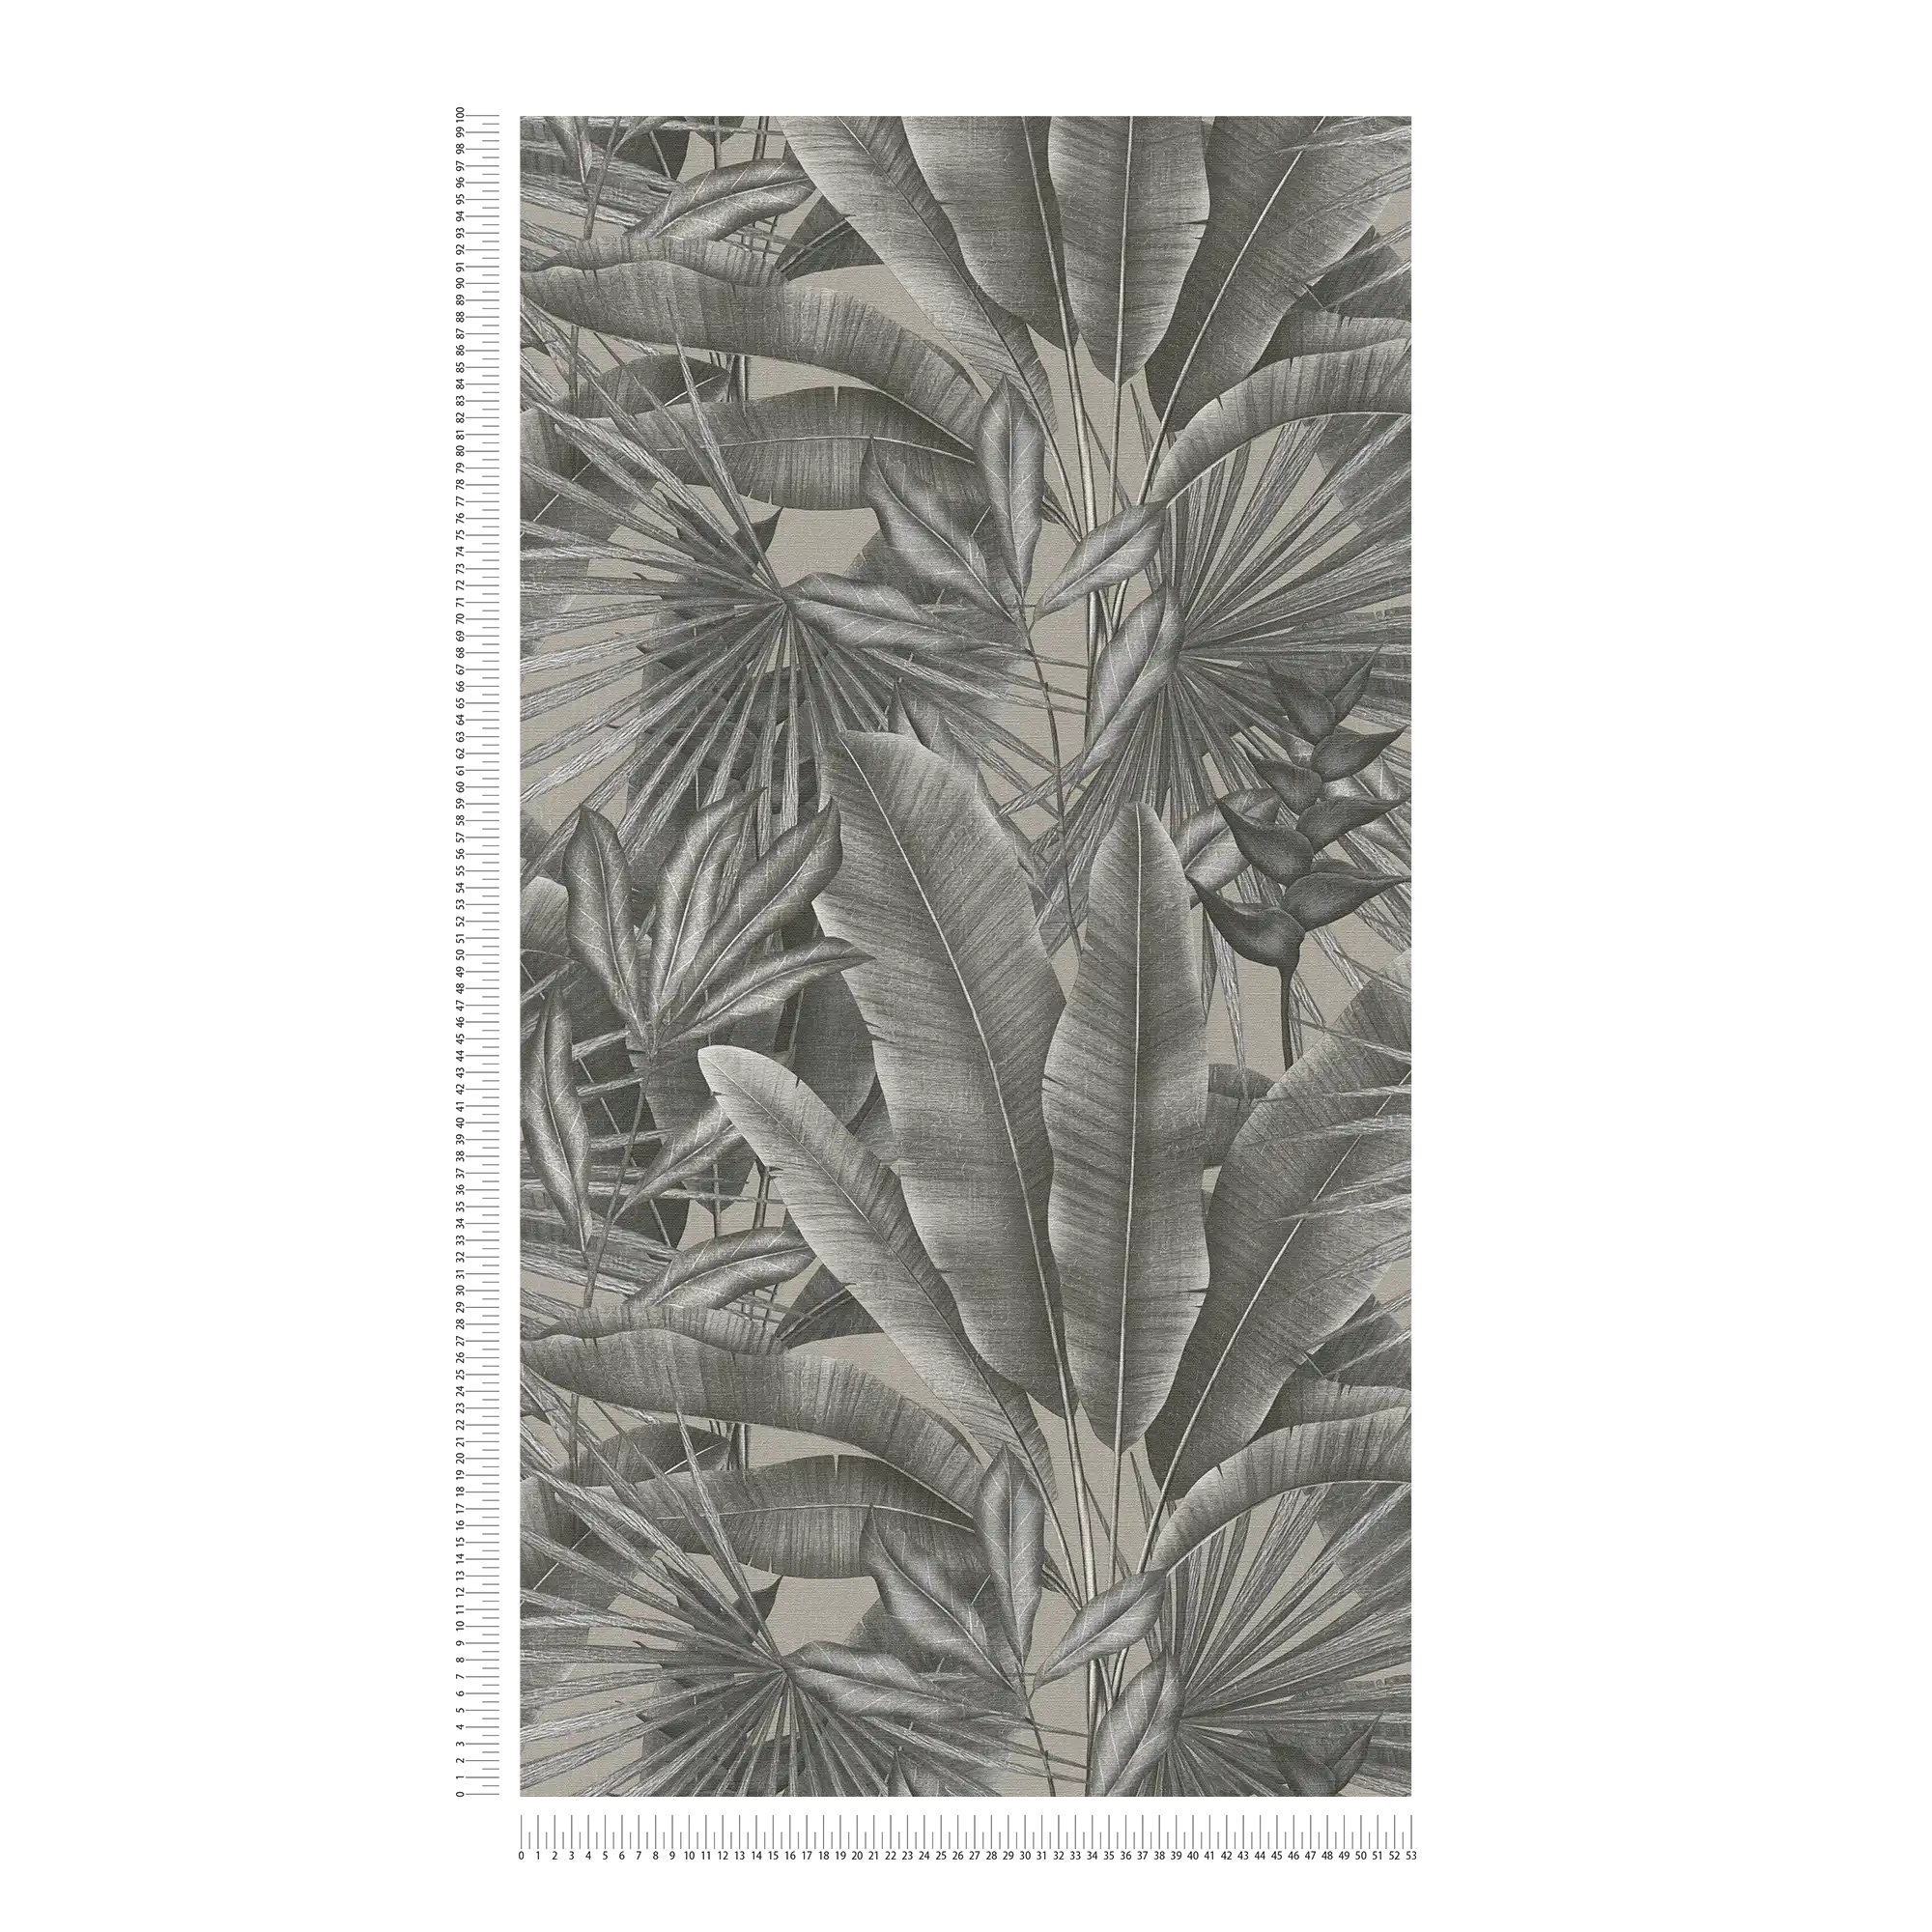             Carta da parati non tessuta con motivo a foglie in stile giungla - grigio, beige, nero
        